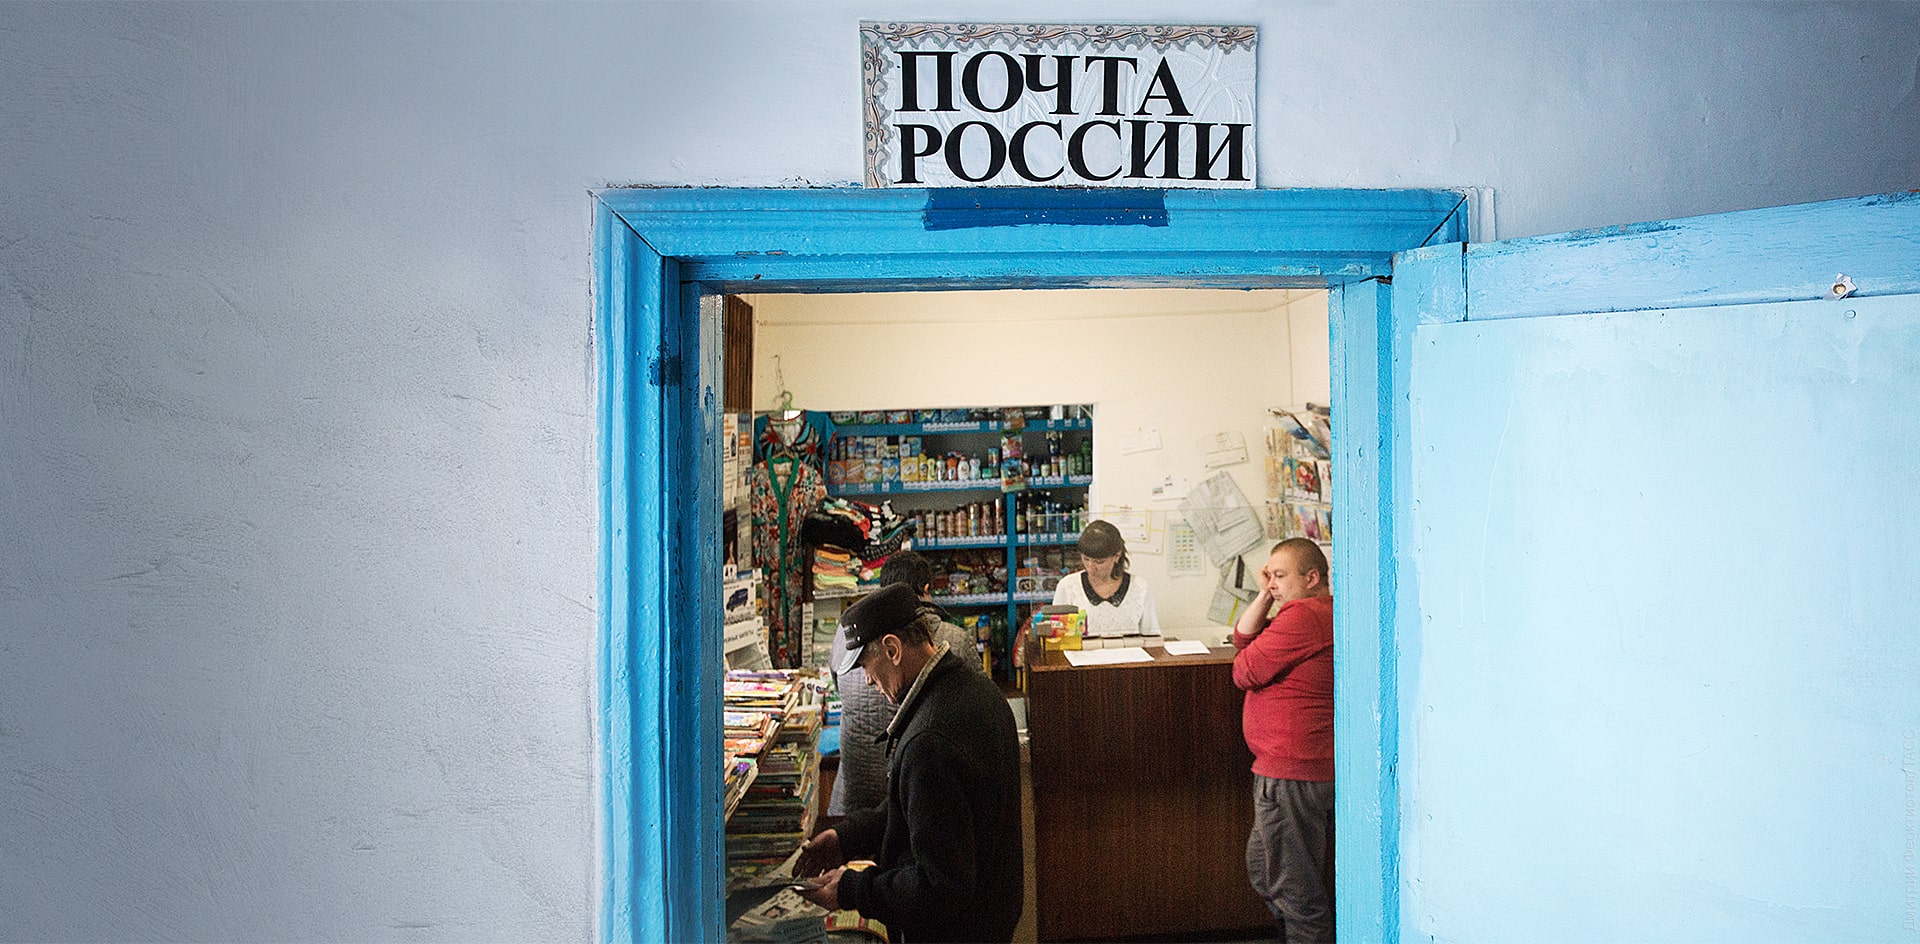 «Почта России»: ещё не всё потеряно?